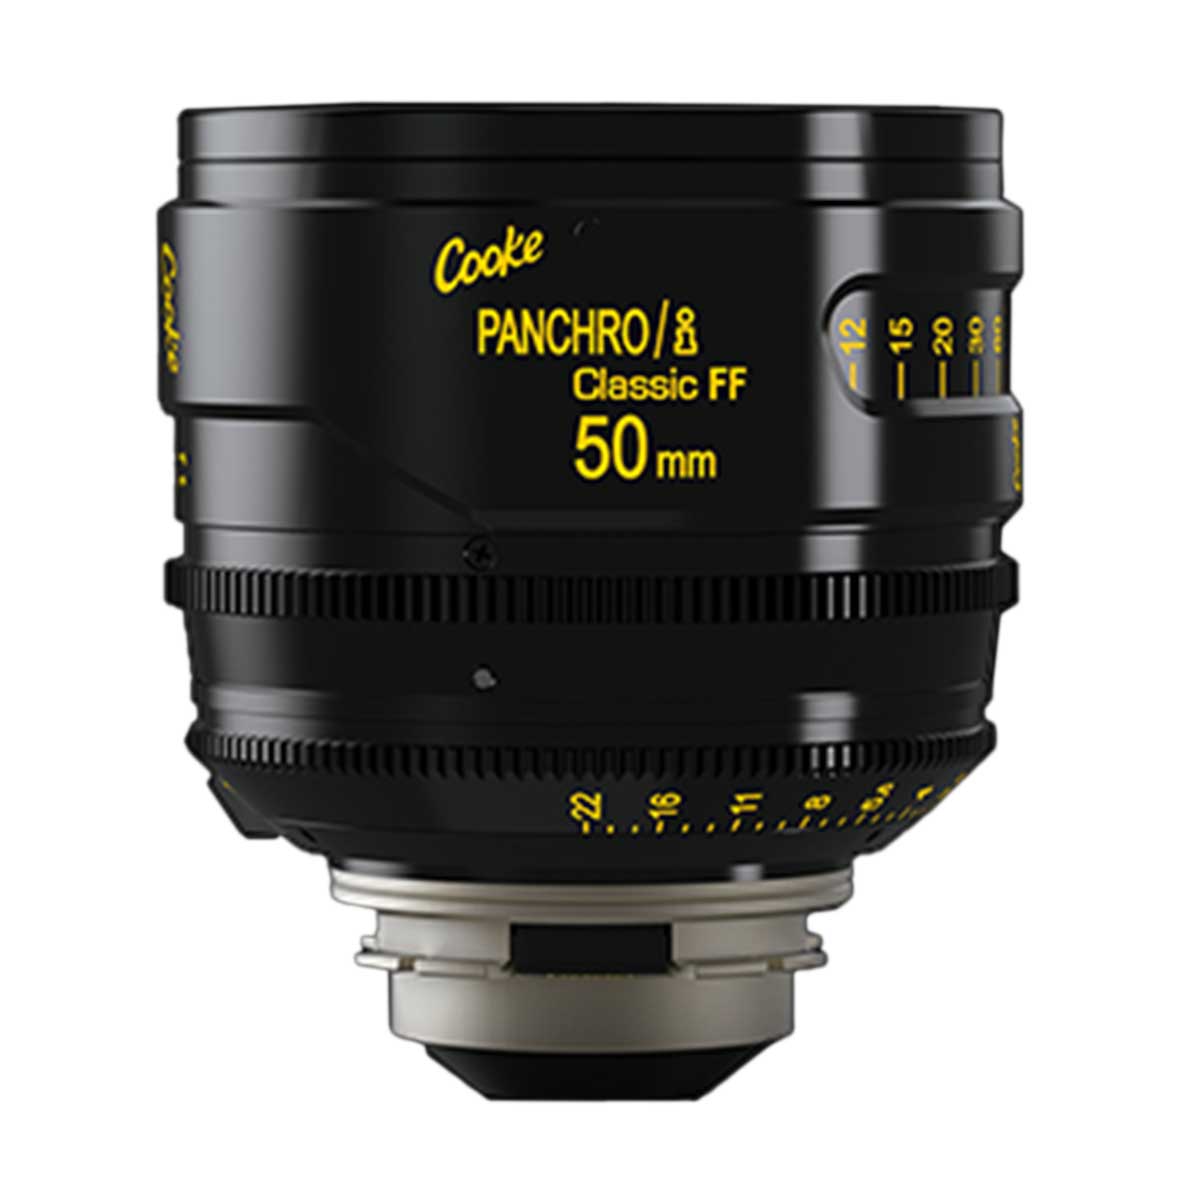 Cooke Panchro / i Classic FF 50mm T2.2